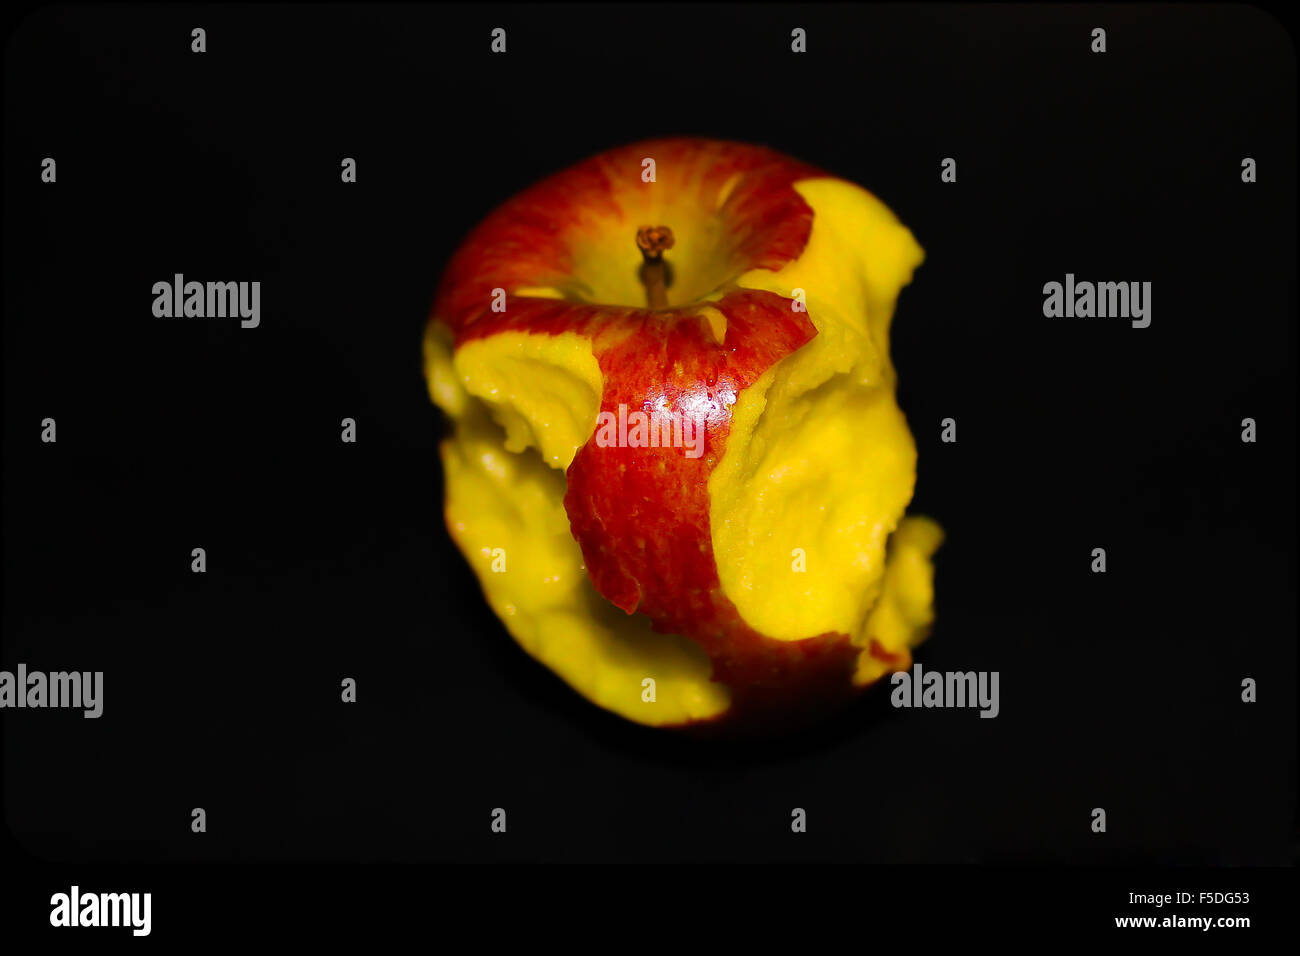 A half eaten apple Stock Photo